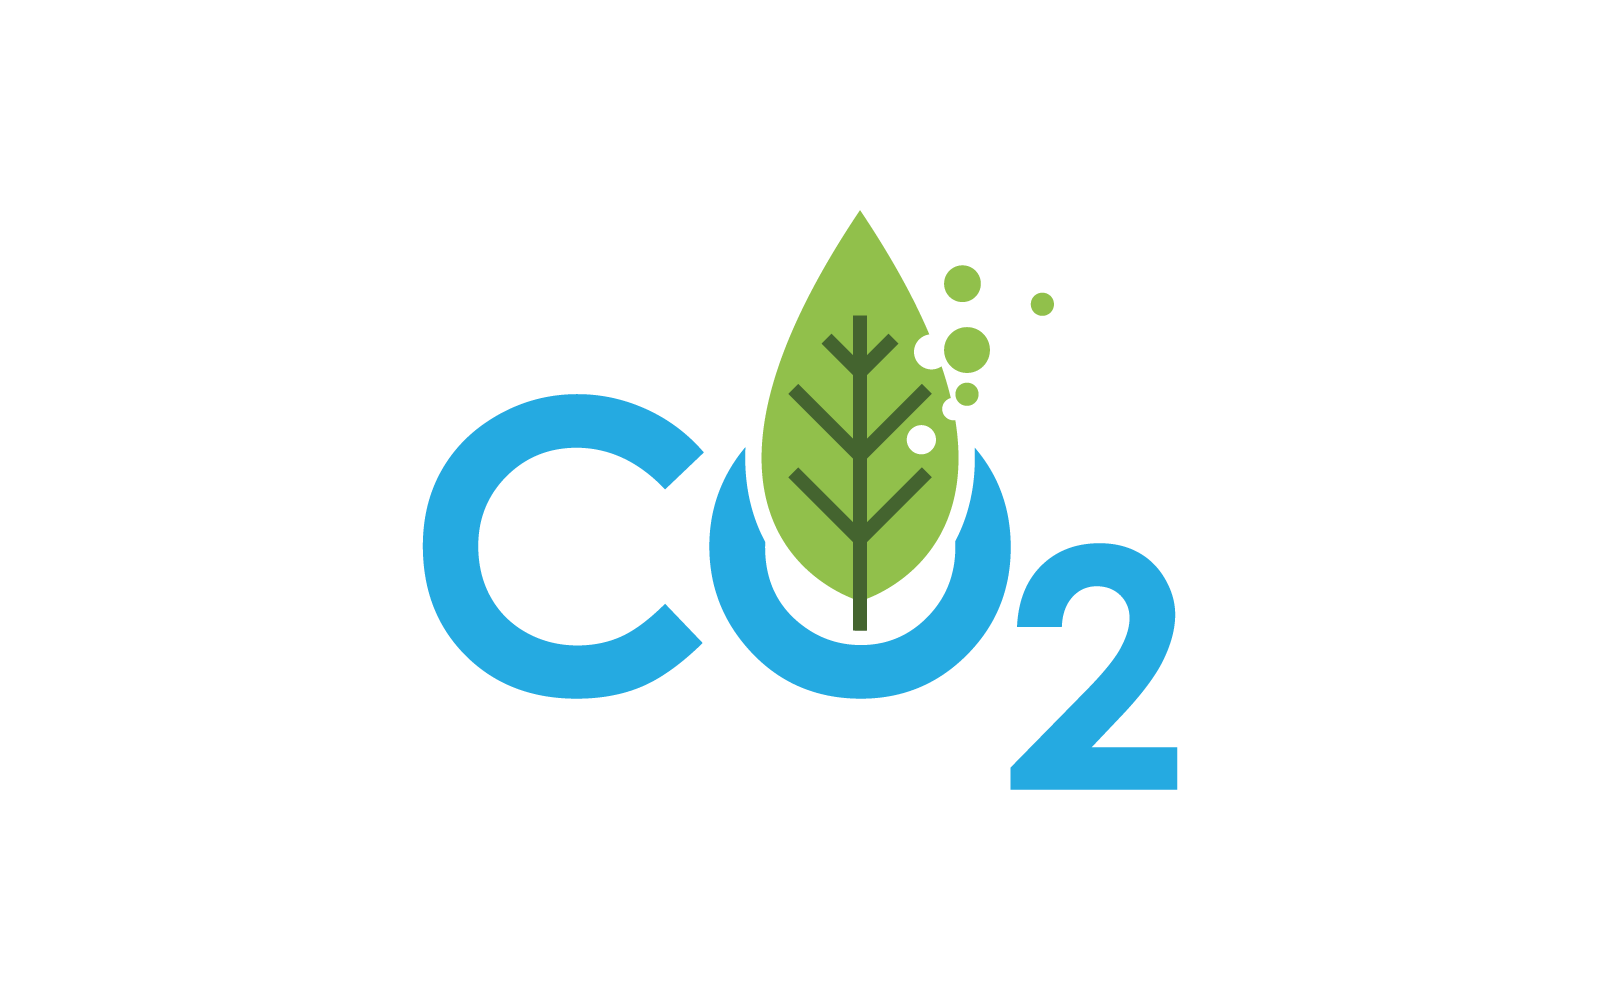 Co2 二氧化碳标志图标矢量设计